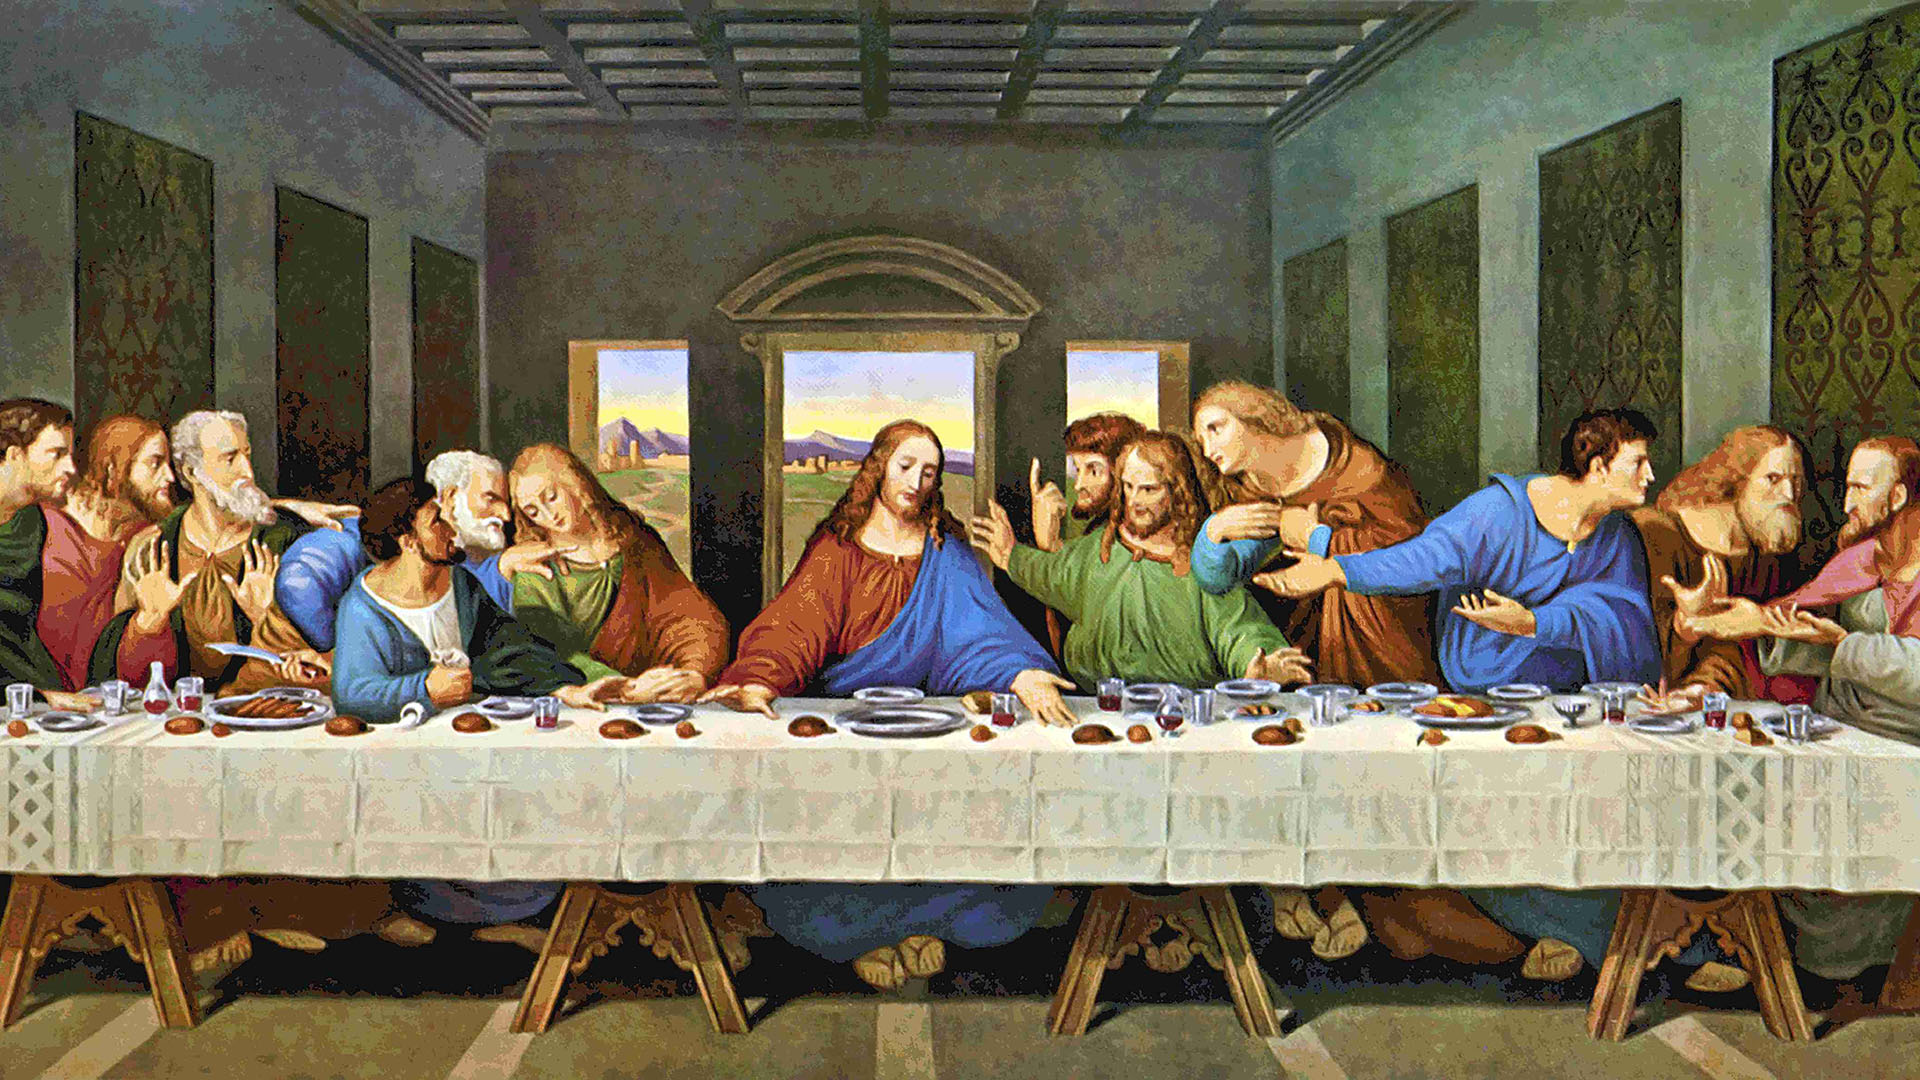 En la última cena, 13 fueron los apóstoles. Y ese número lo llevó Judas, quien traicionaría a Jesús